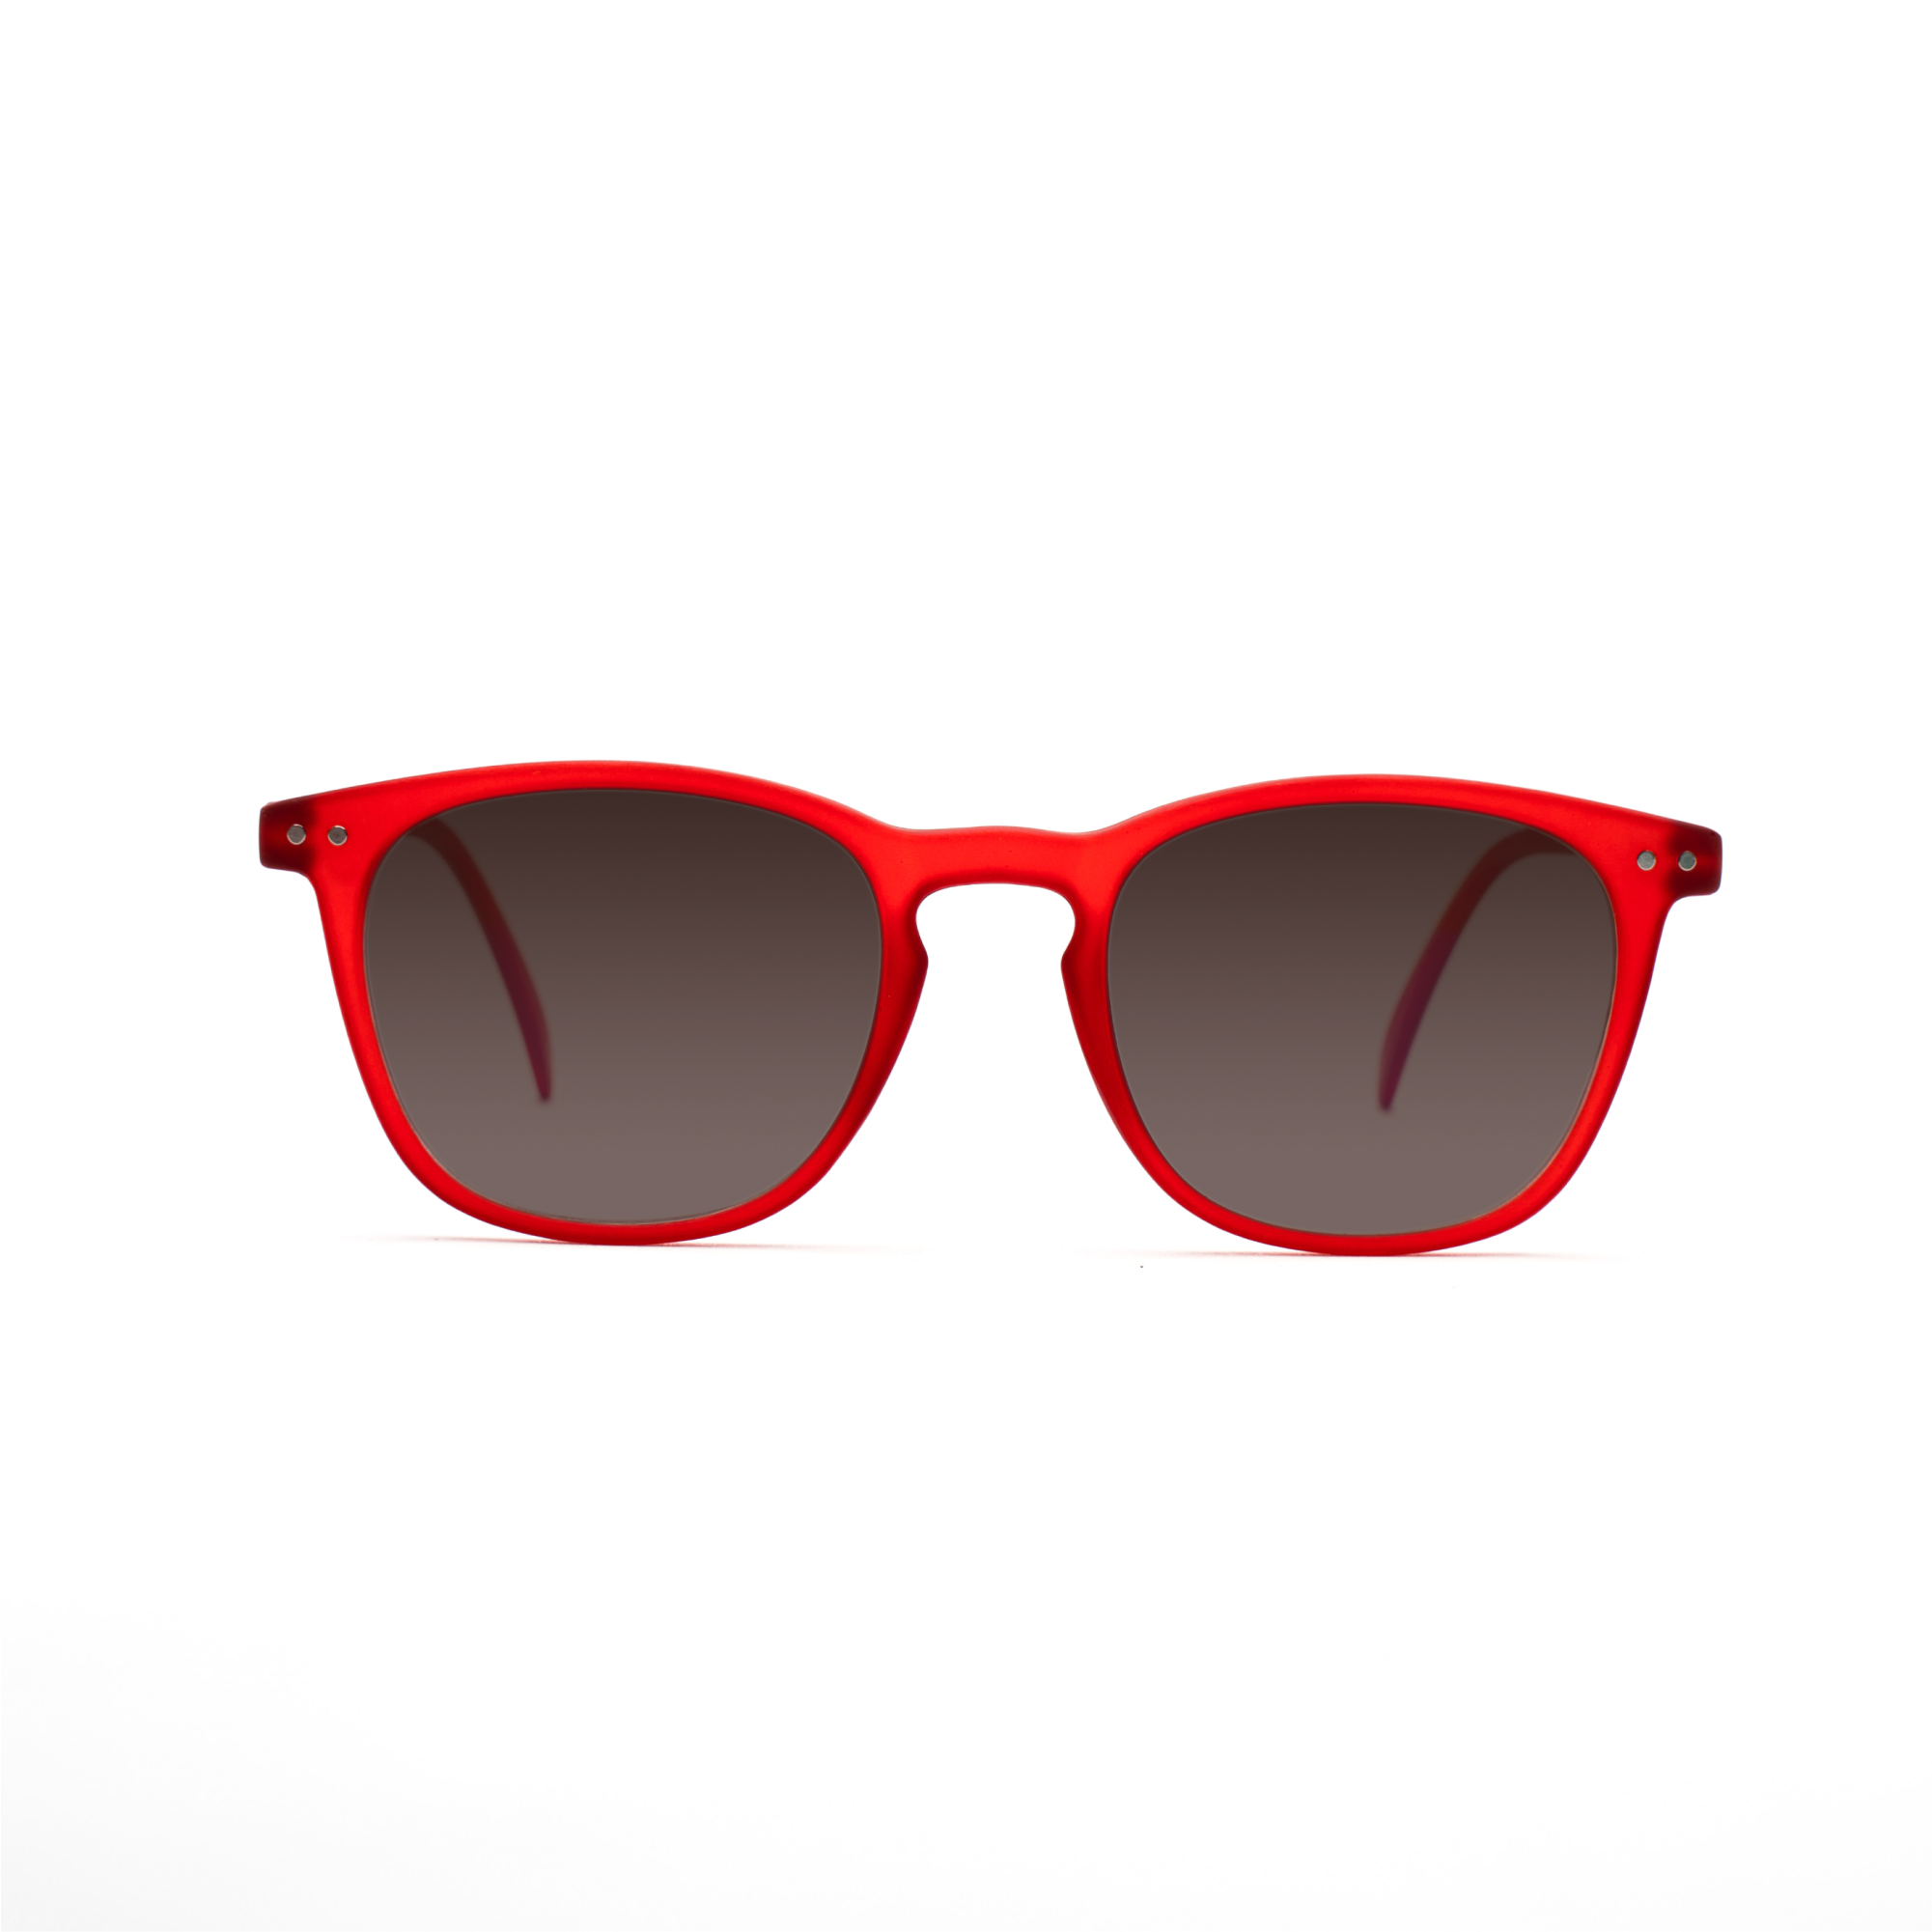 men's sunglasses – William UVSUN m - Red